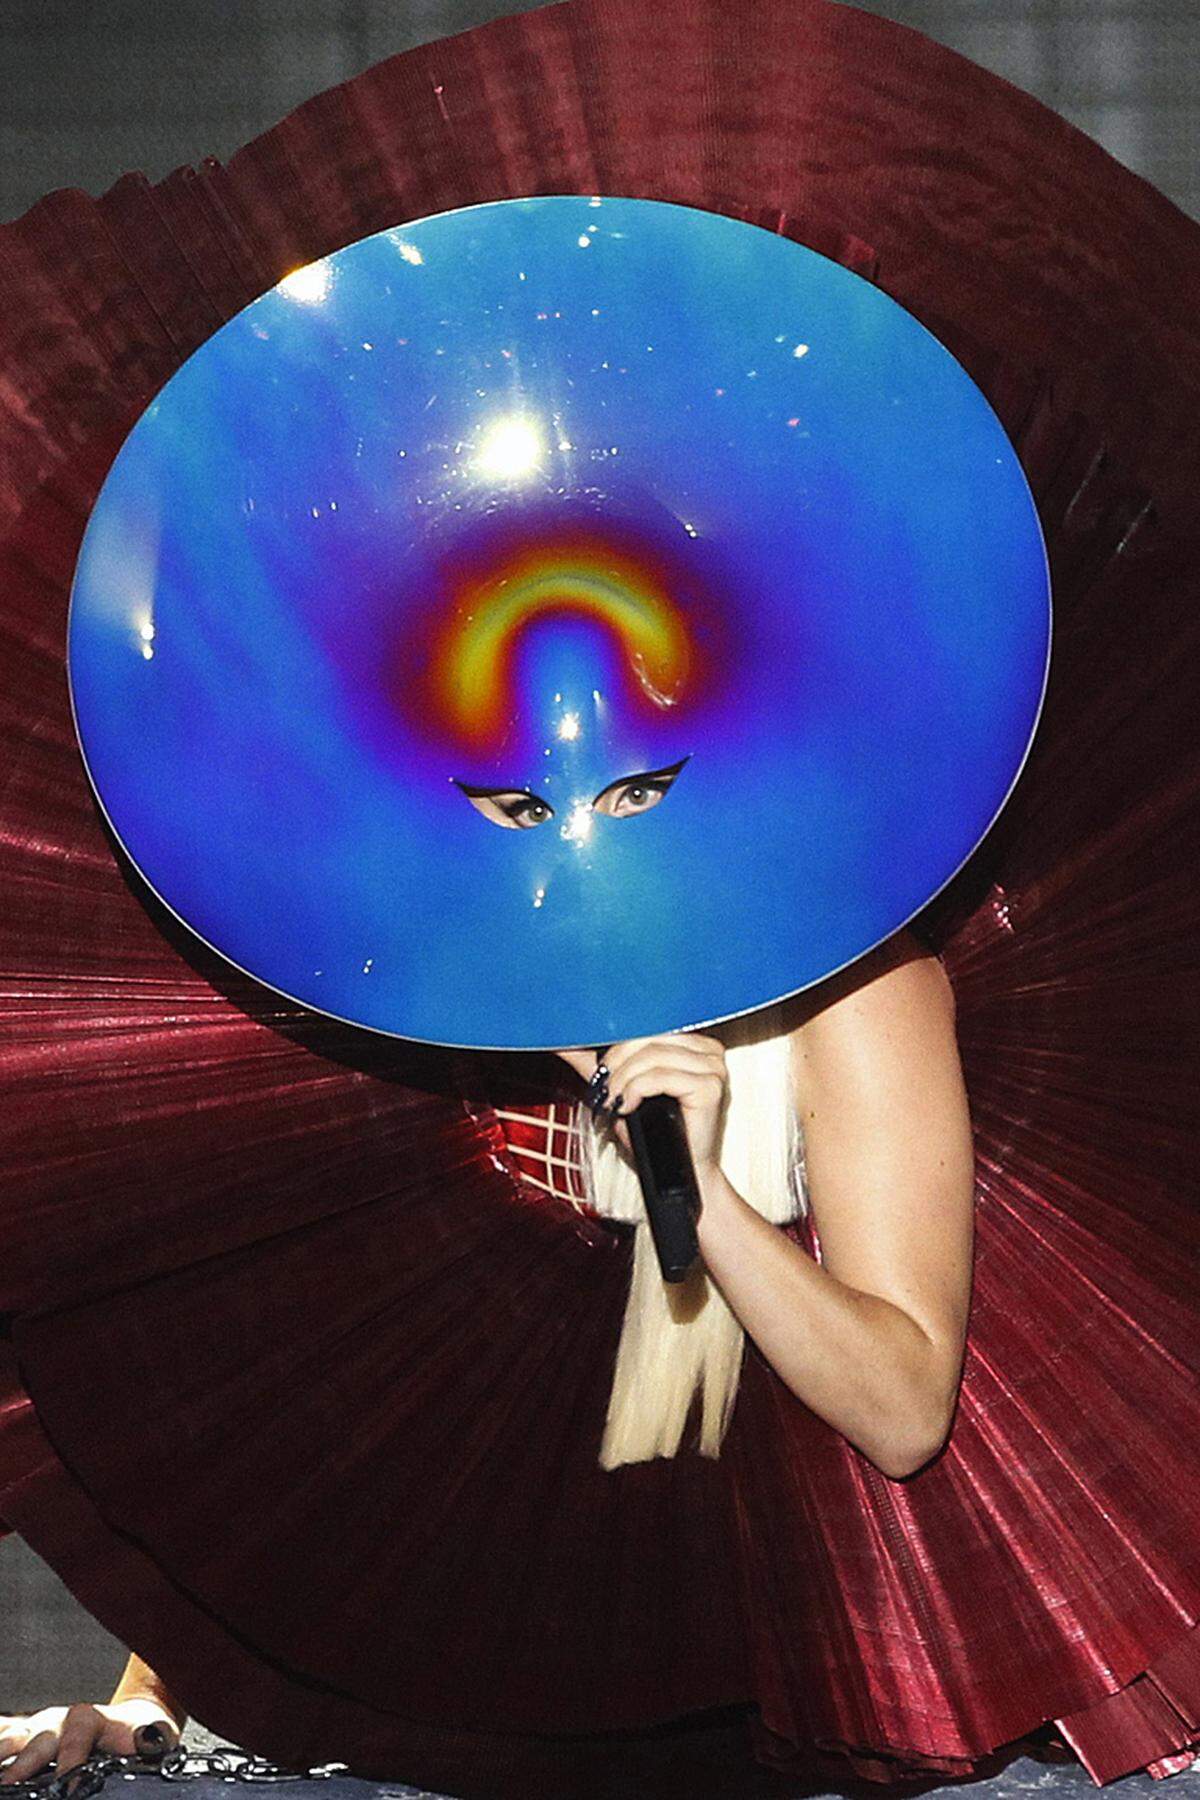 Nämlich eine Art überdimensionalen blitzblauen Wok. Ach ja, Preise gab es für Lady Gaga auch noch.